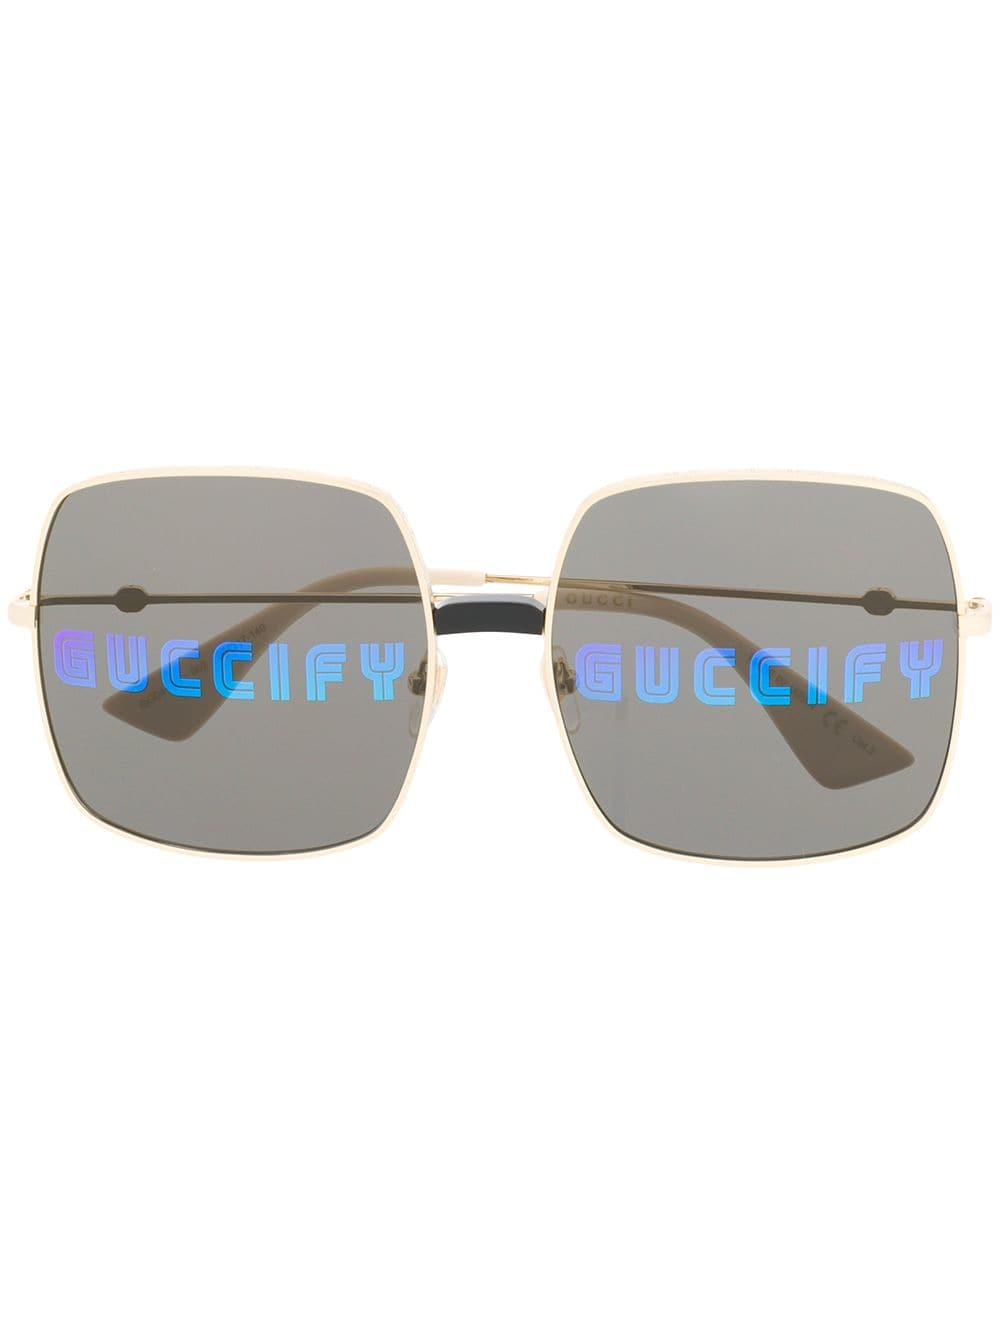 guccify sunglasses